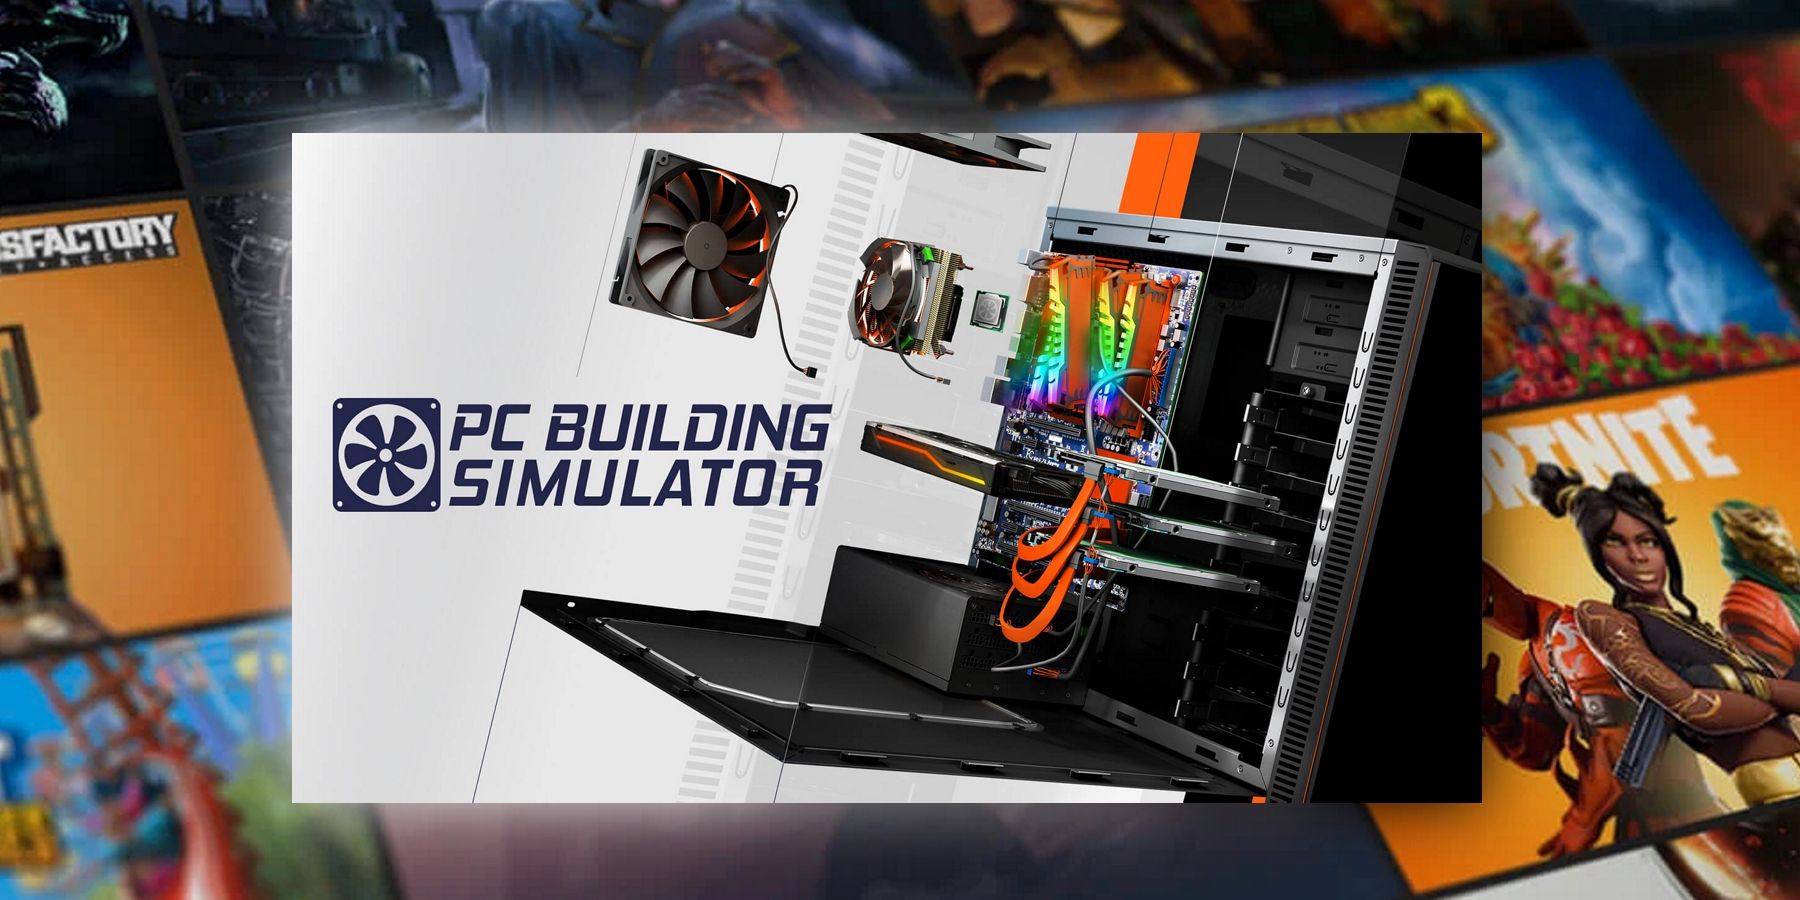 Epic Games Store Gratis spil PC Building Simulator forklaret